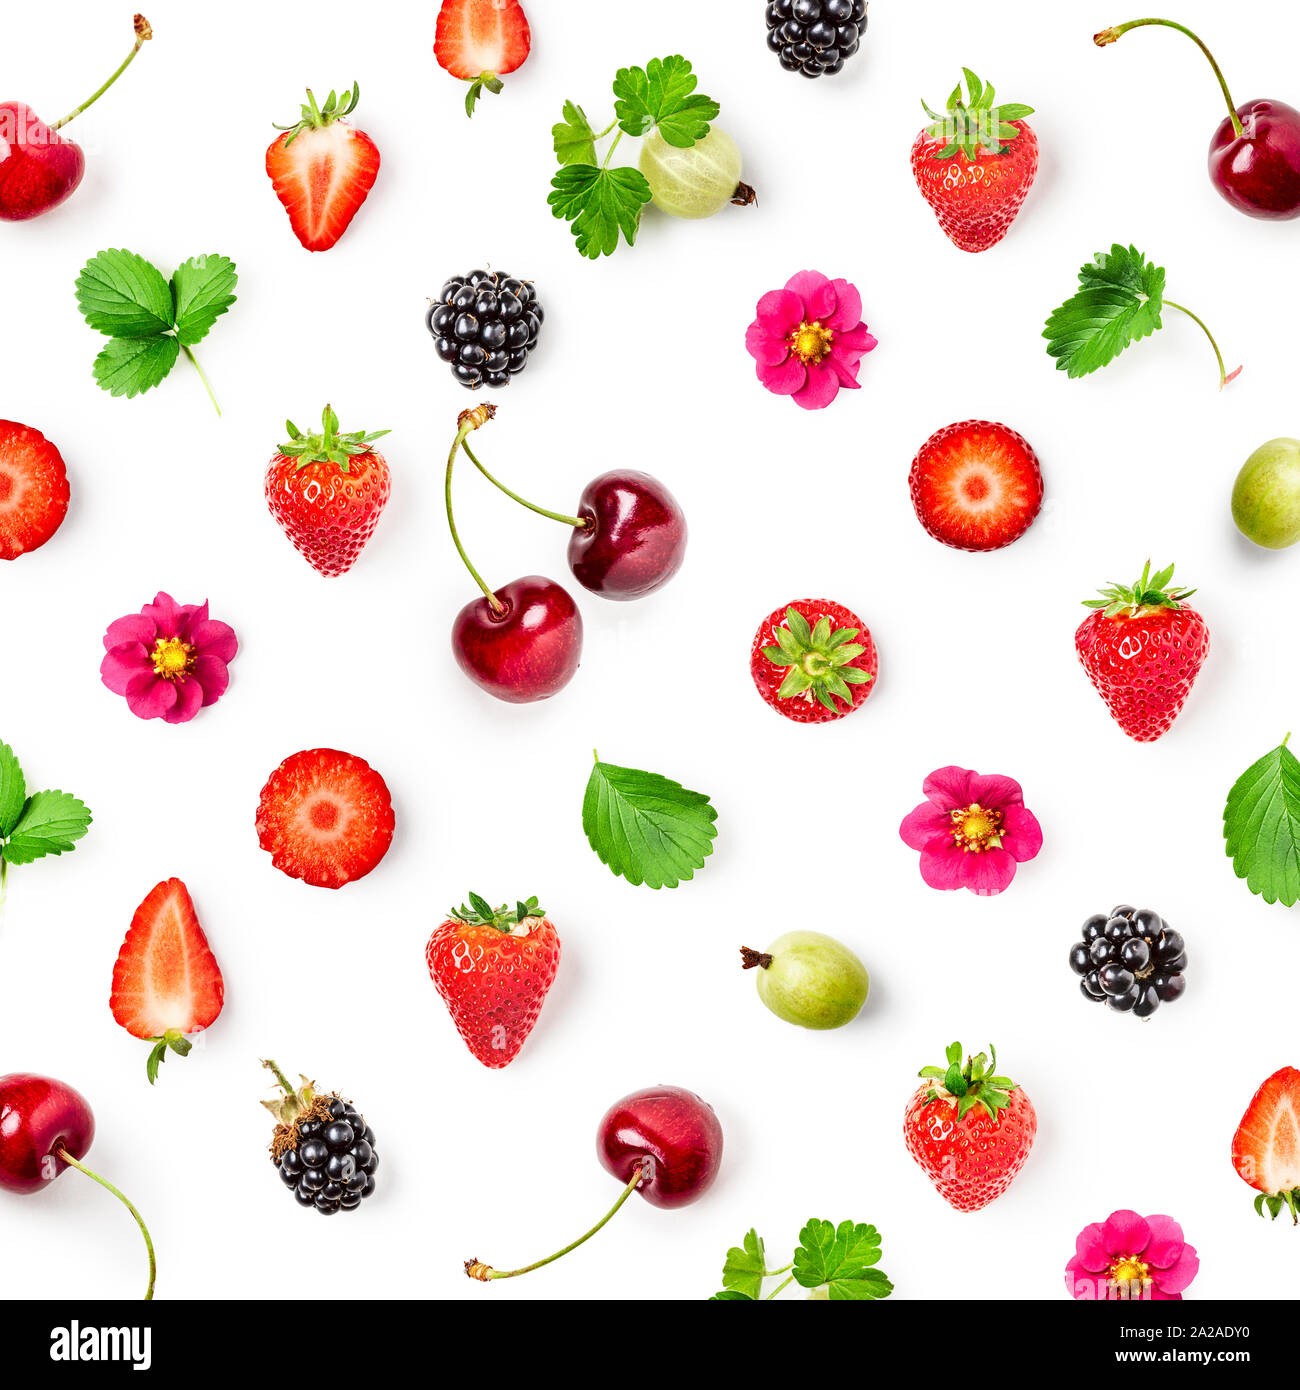 Des fraises fraîches, de cerise, de groseille et de blackberry sur fond blanc. Concept de saine alimentation. Les fruits d'été. Haut de la vue, télévision lay Banque D'Images